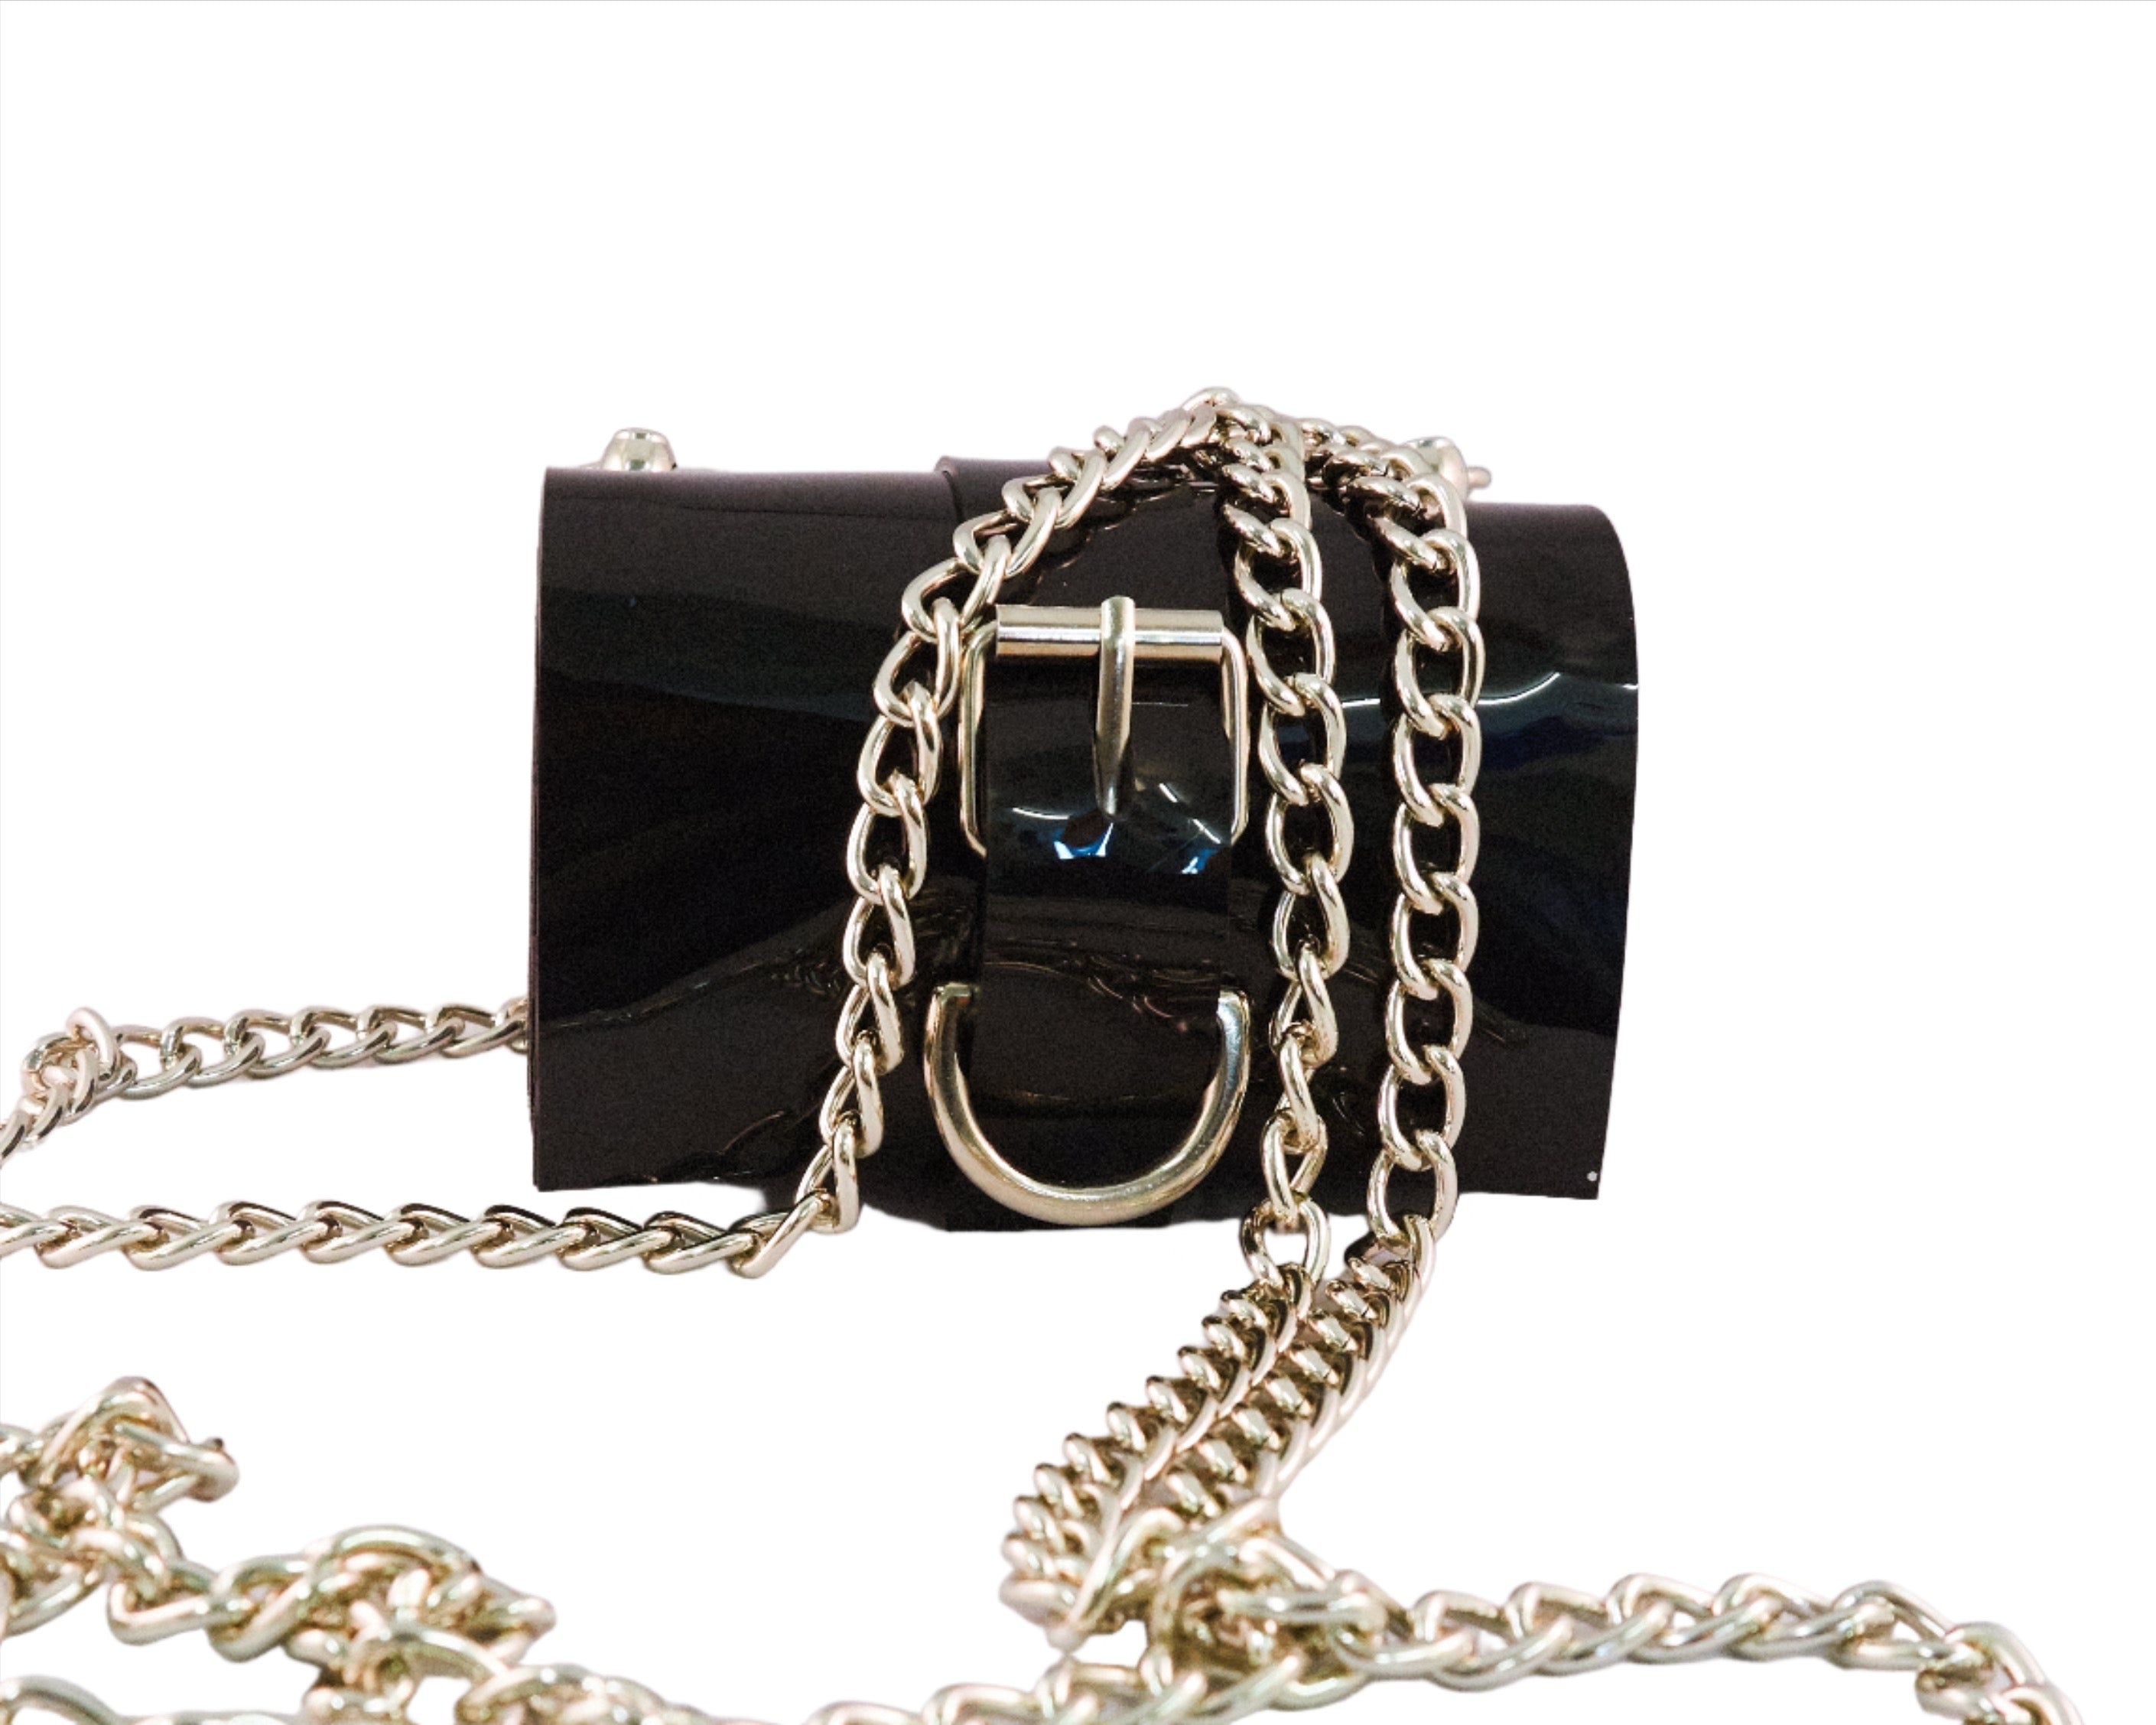 'The Secret' Jivomir Domoustchiev vegan vinyl luxury purse bag